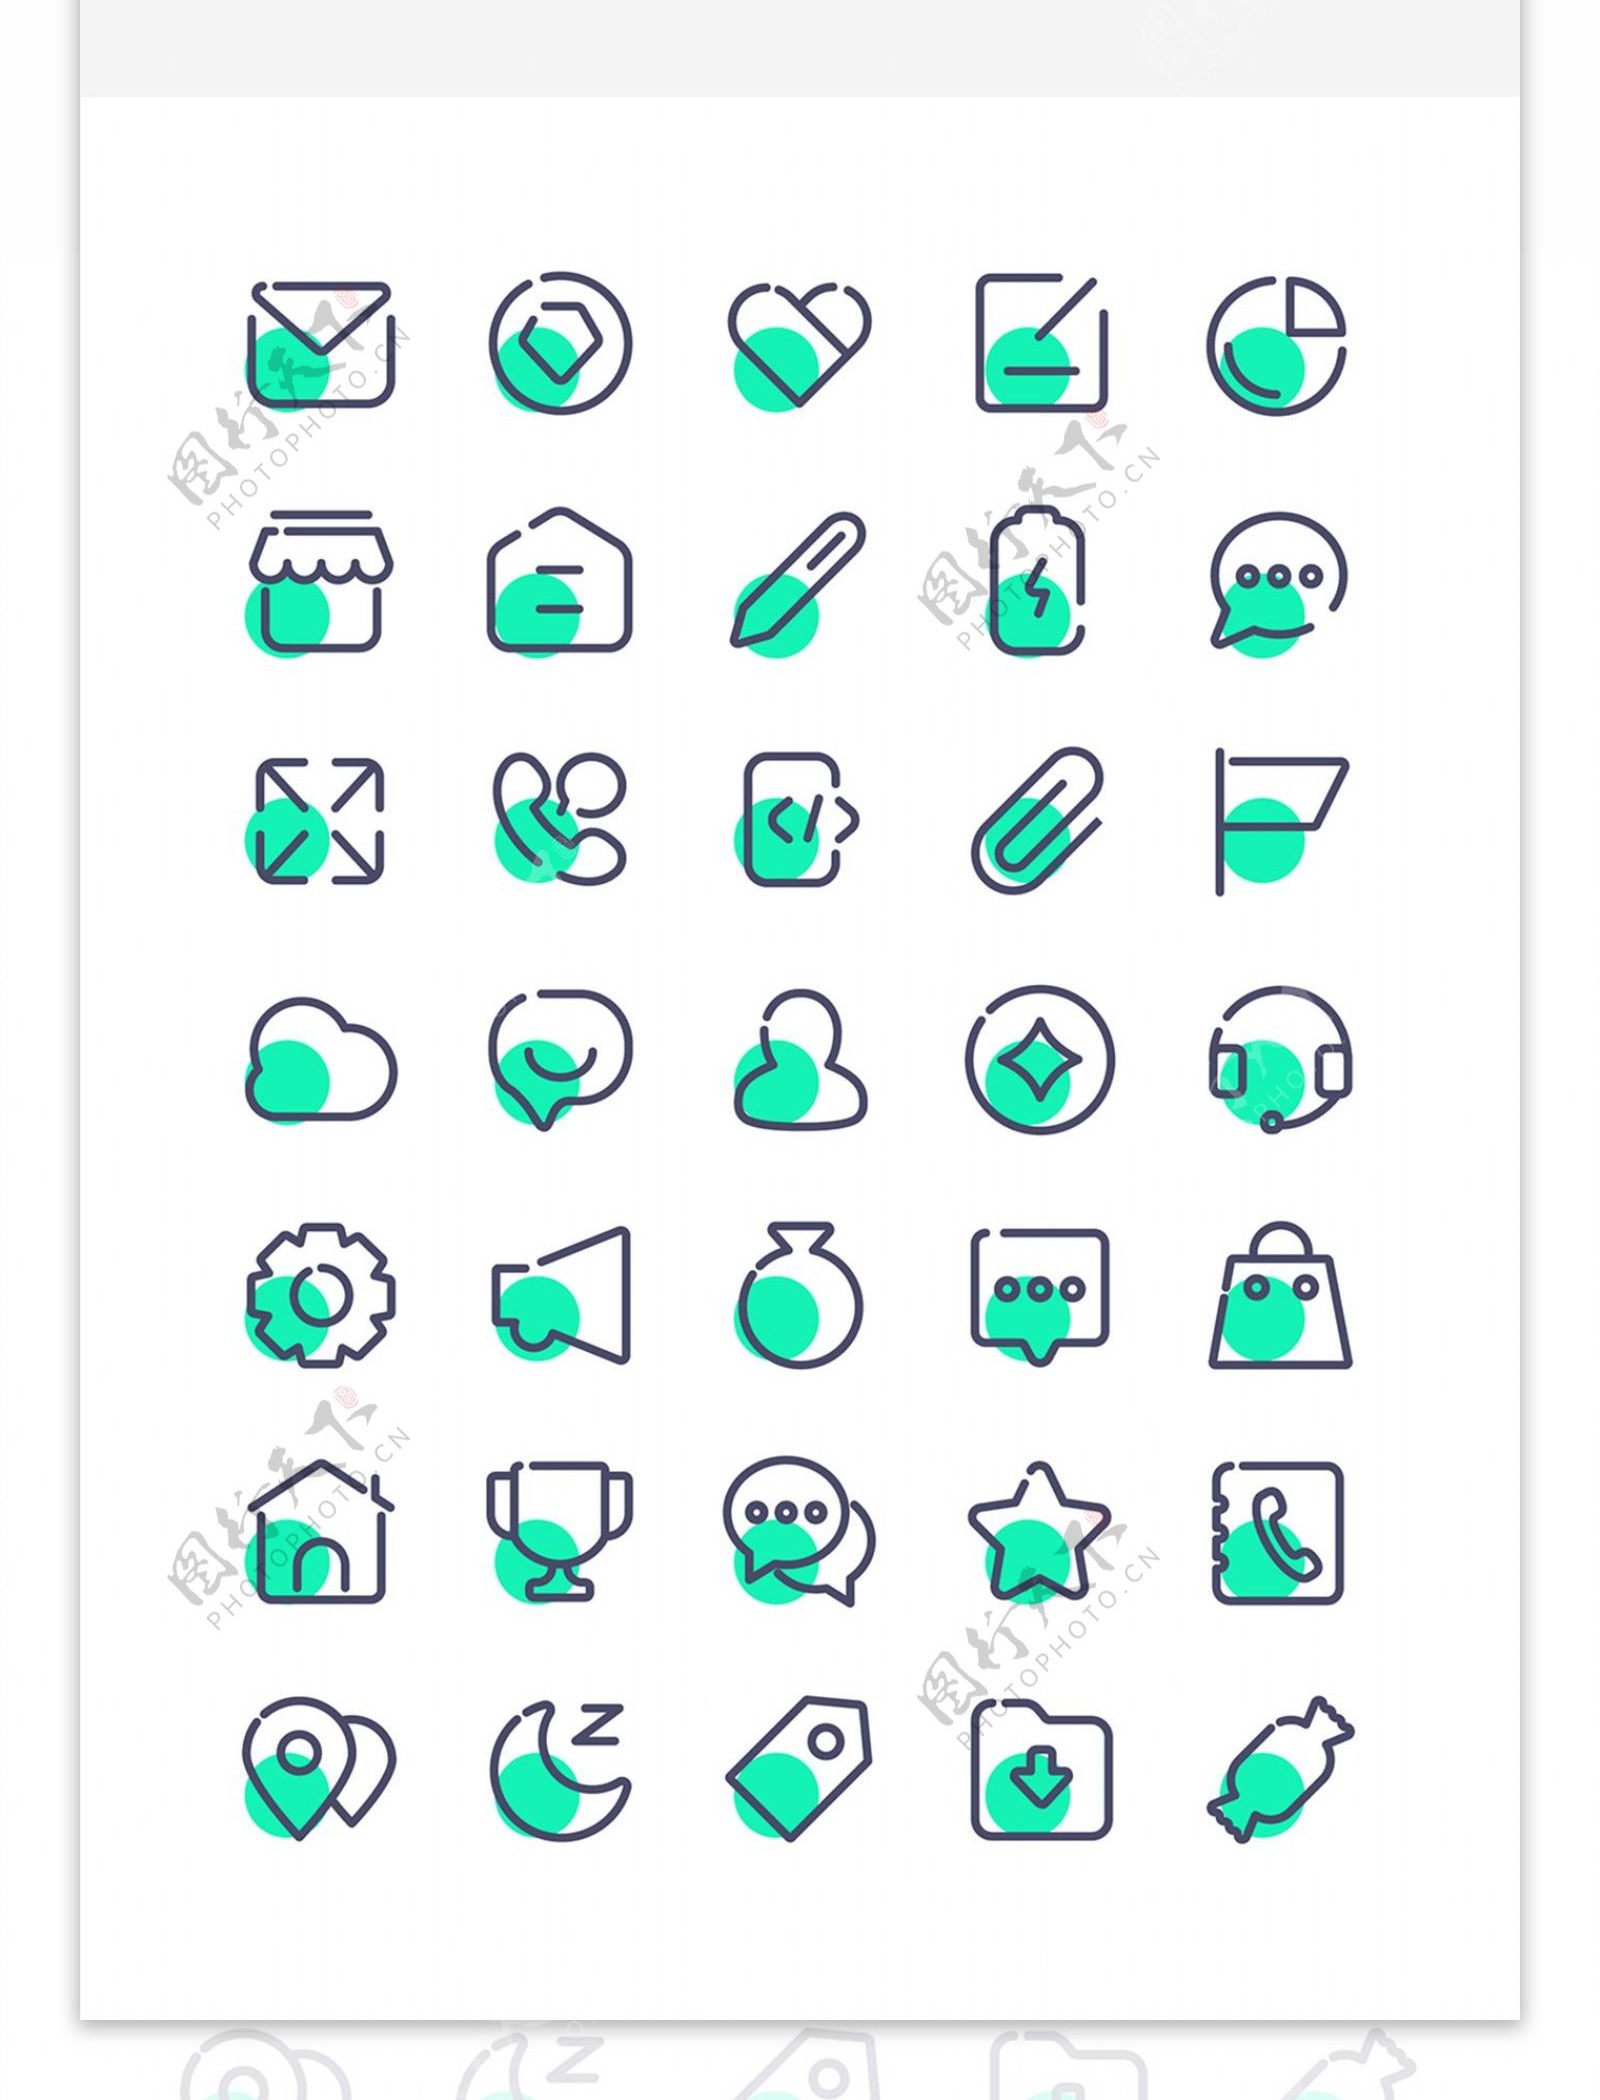 简约单色线性icon蓝绿色矢量UI图标